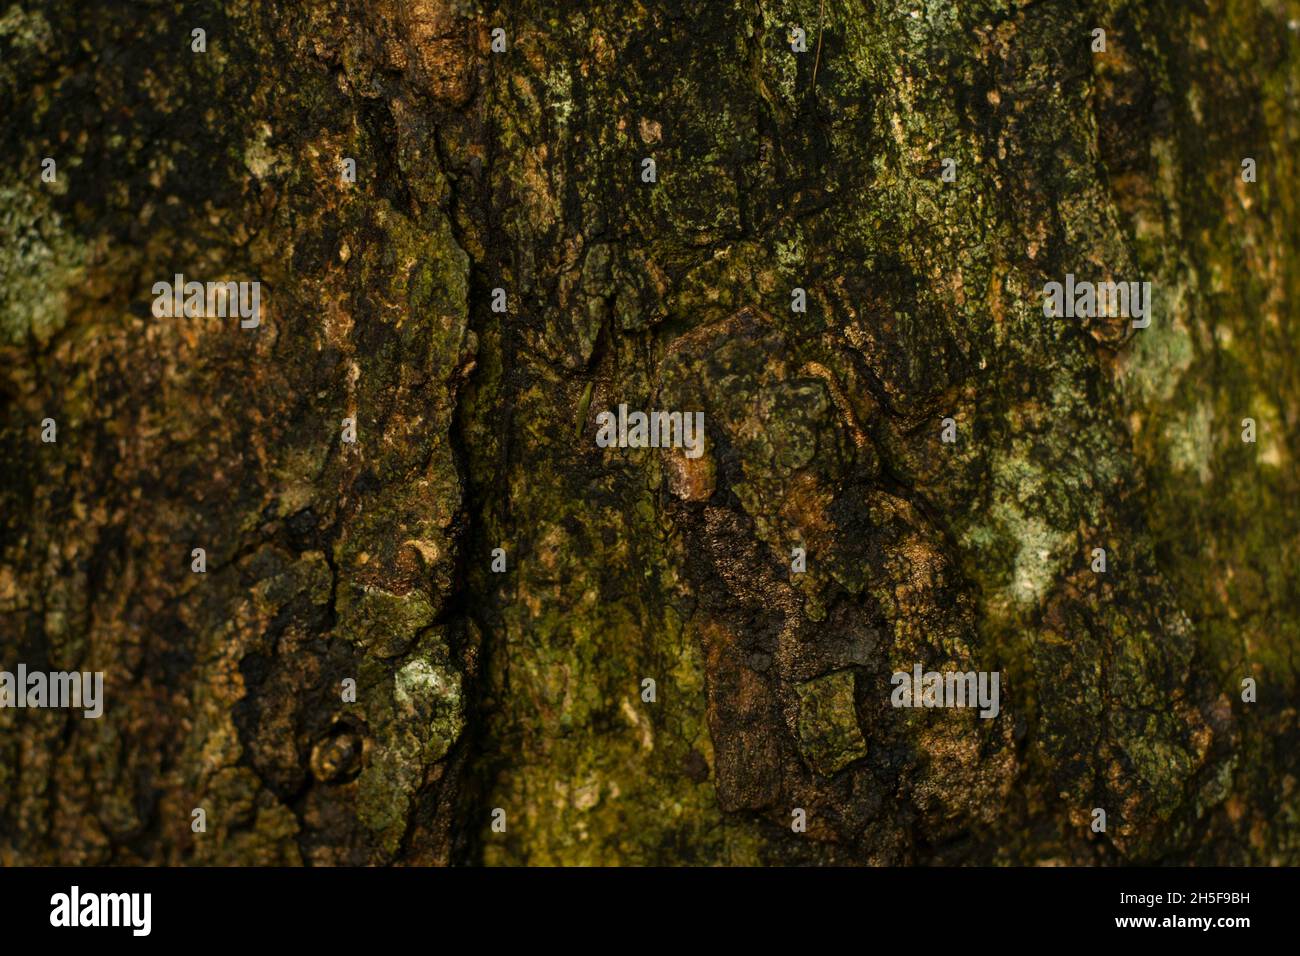 La texture close-up di corteccia di albero. La superficie ruvida di albero naturale corteccia sfondo e tronco. Foto Stock